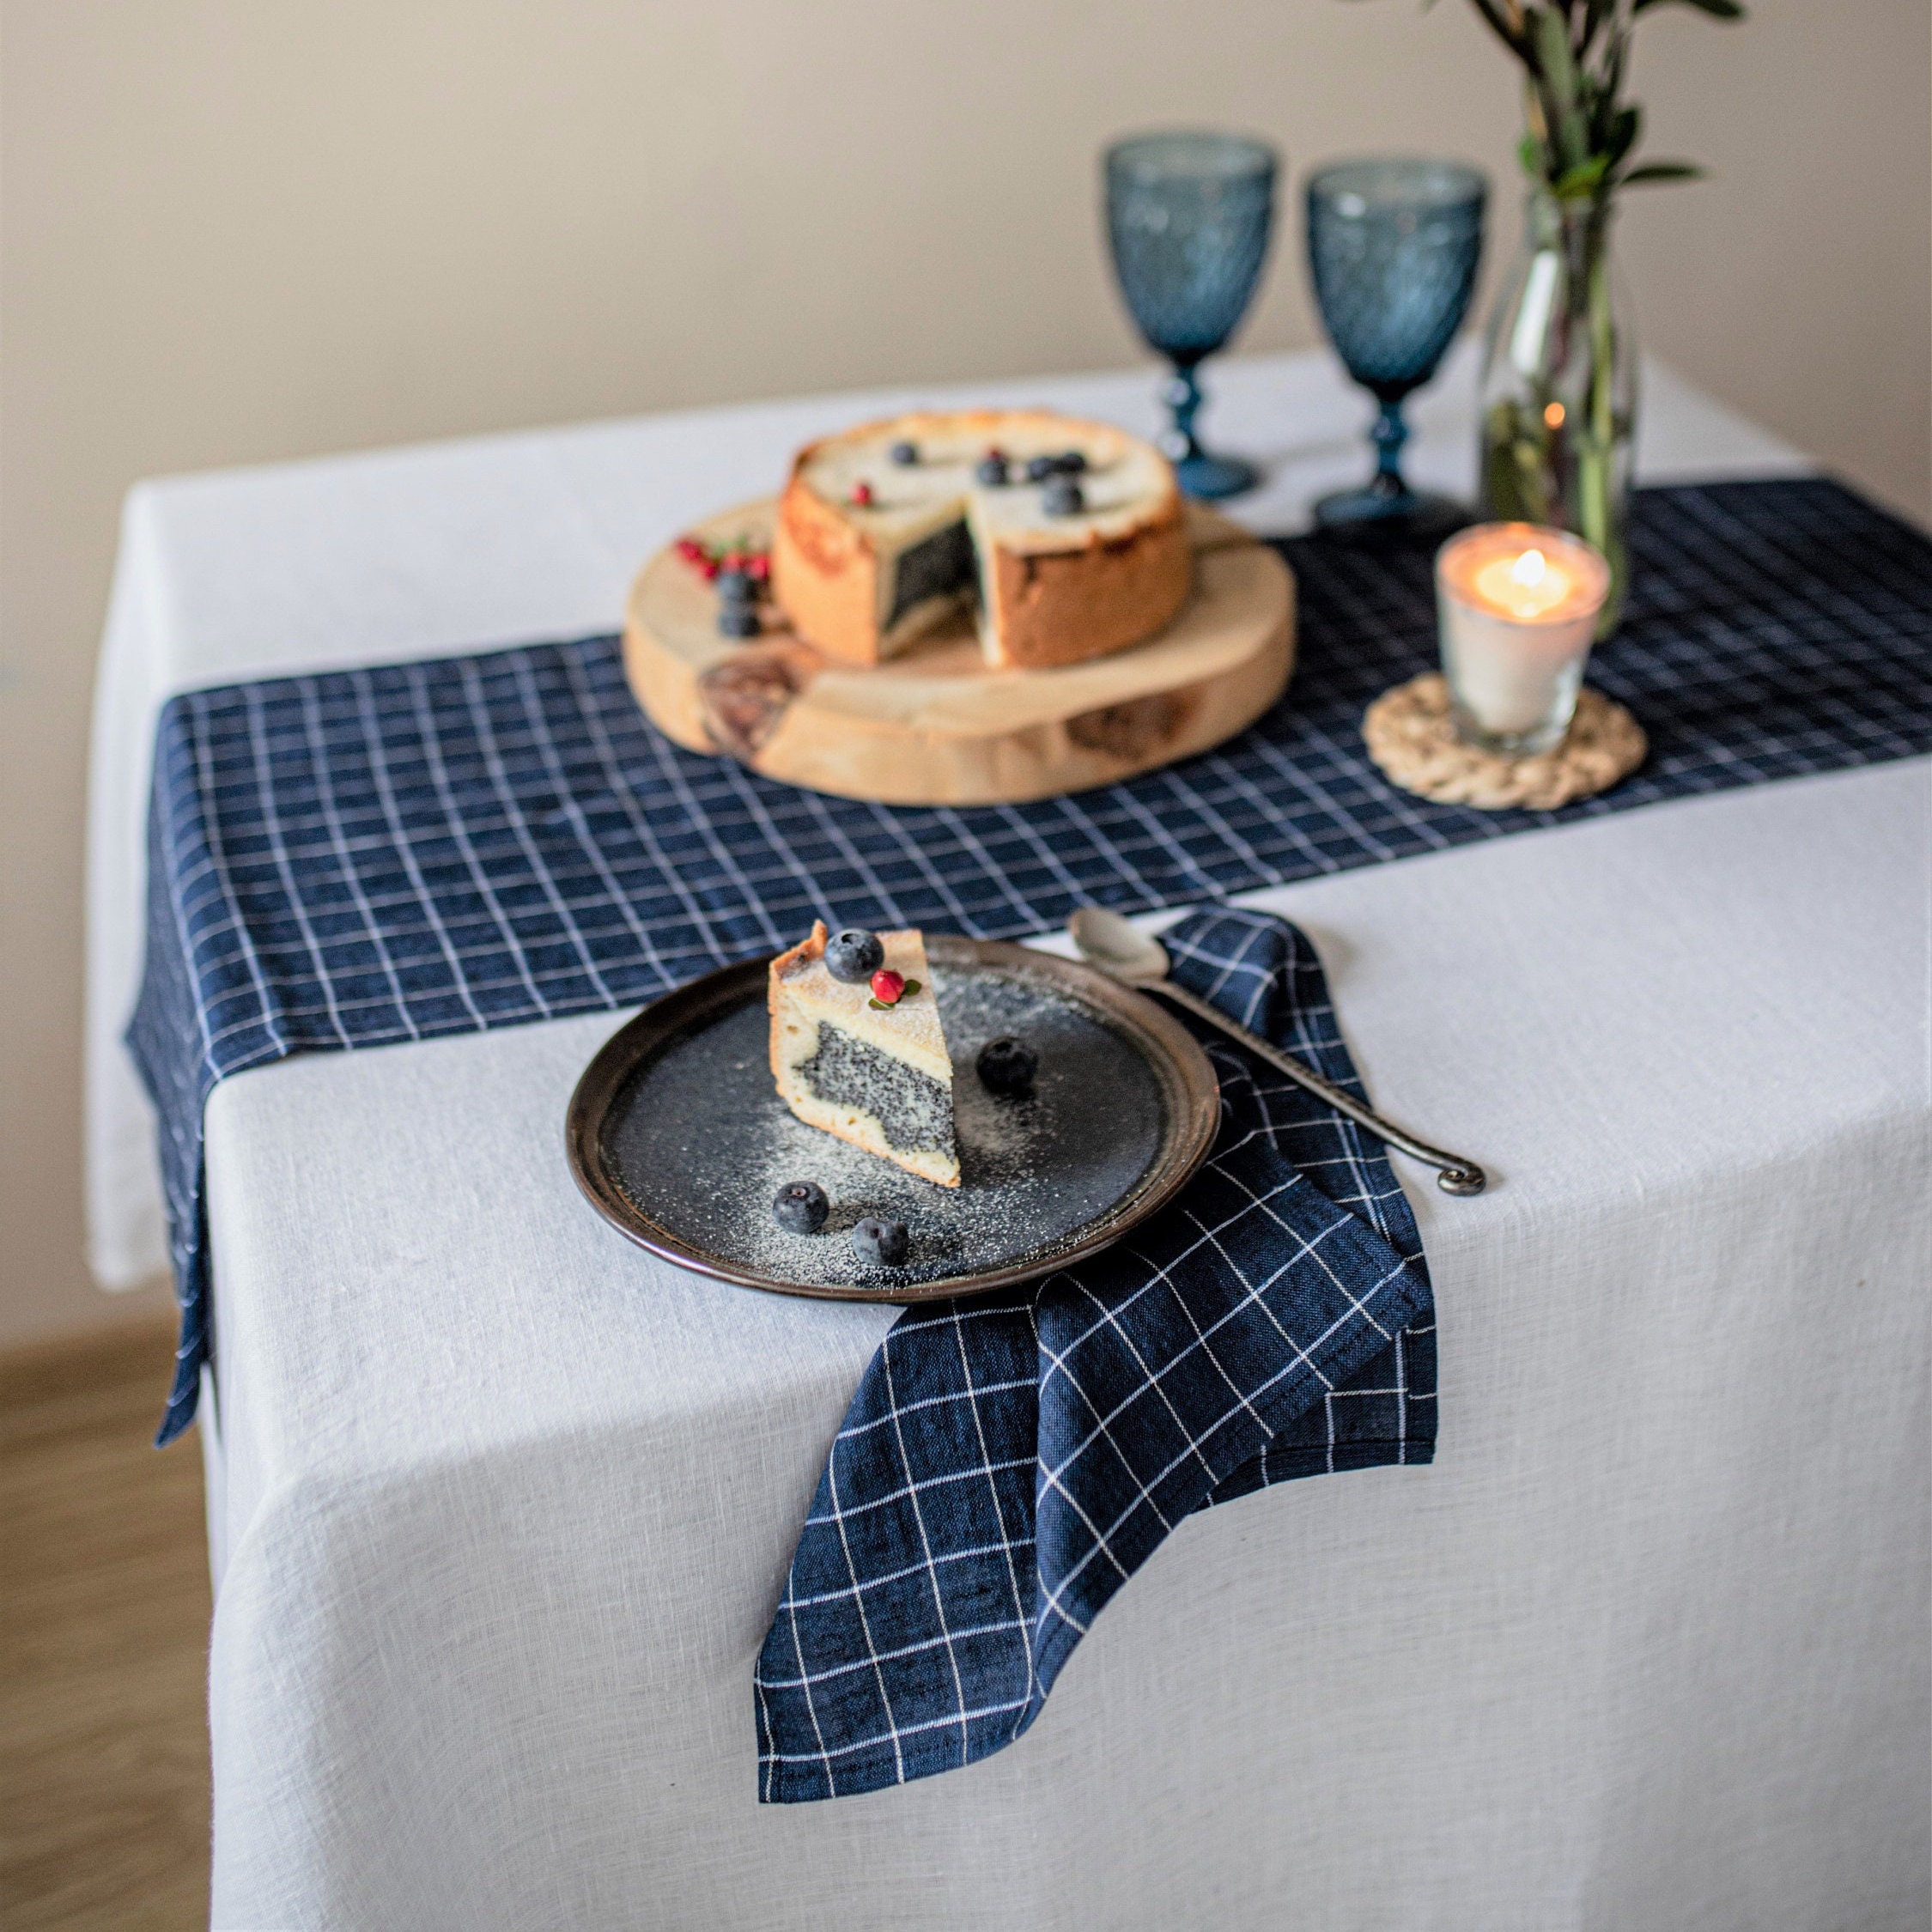 Serviette de cuisine en lin bleu marine, vêtements de vaisselle